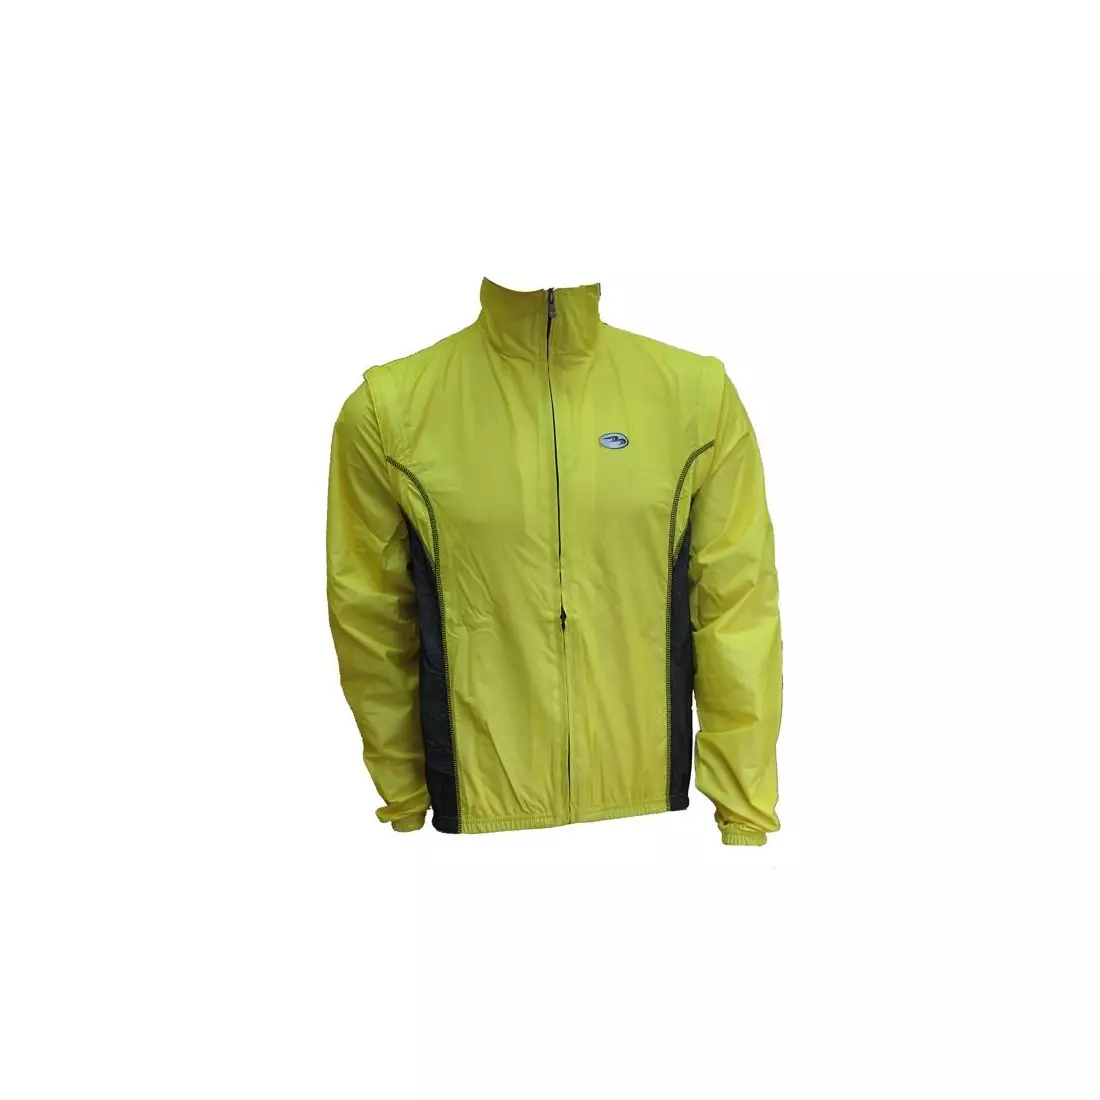 BIEMME FONDO  men's cycling jacket yellow